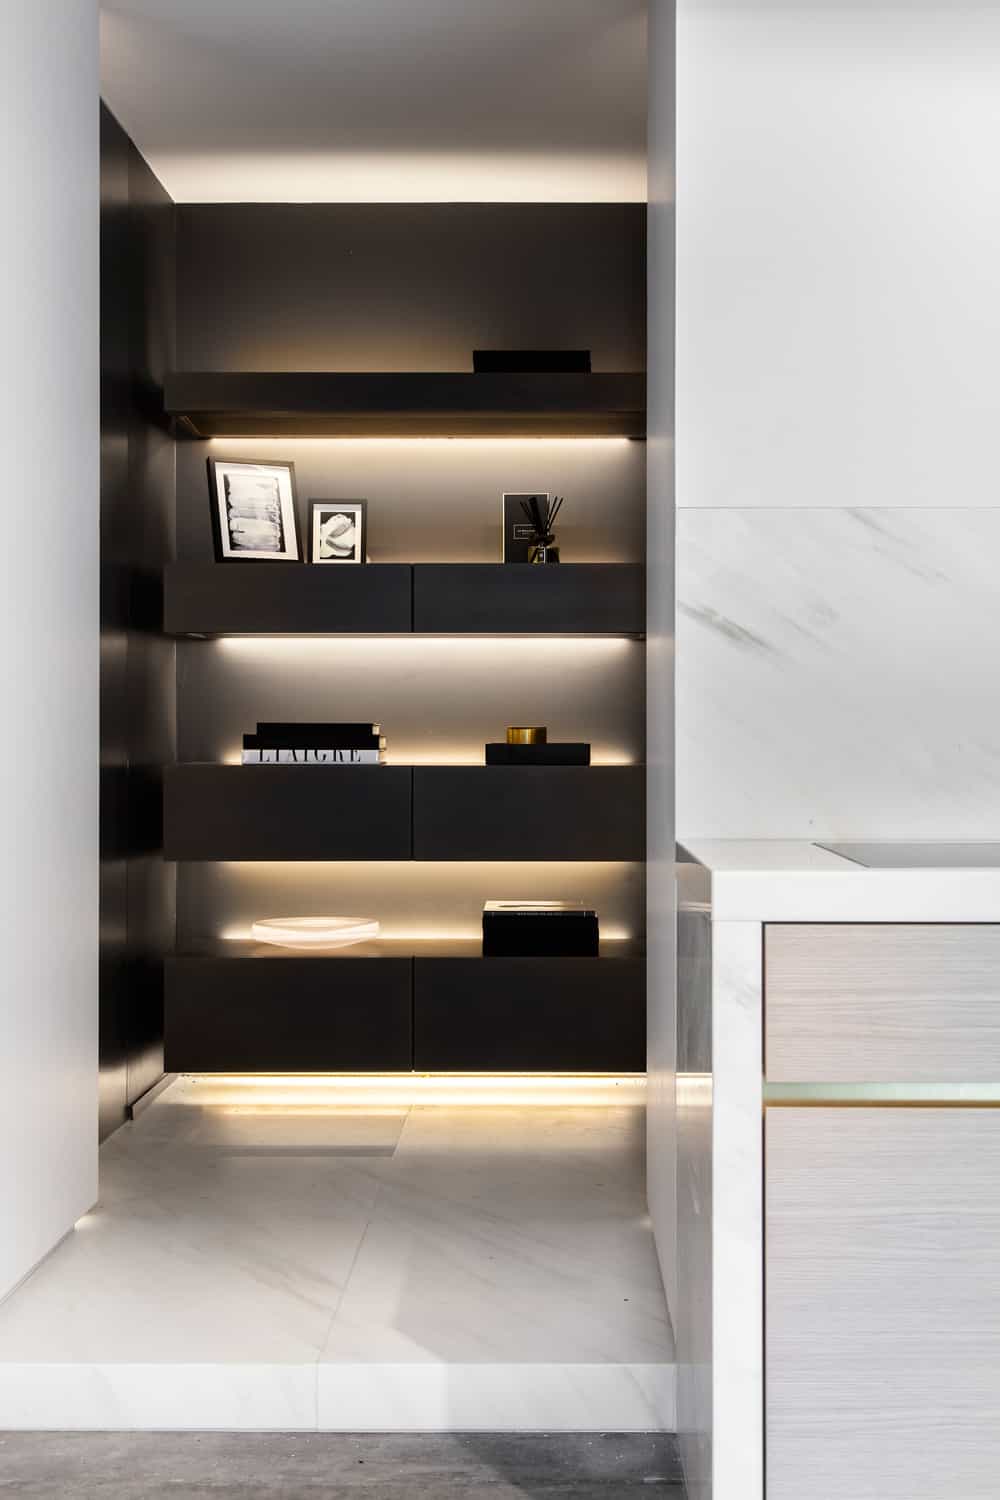 Shelf lighting by Obumex